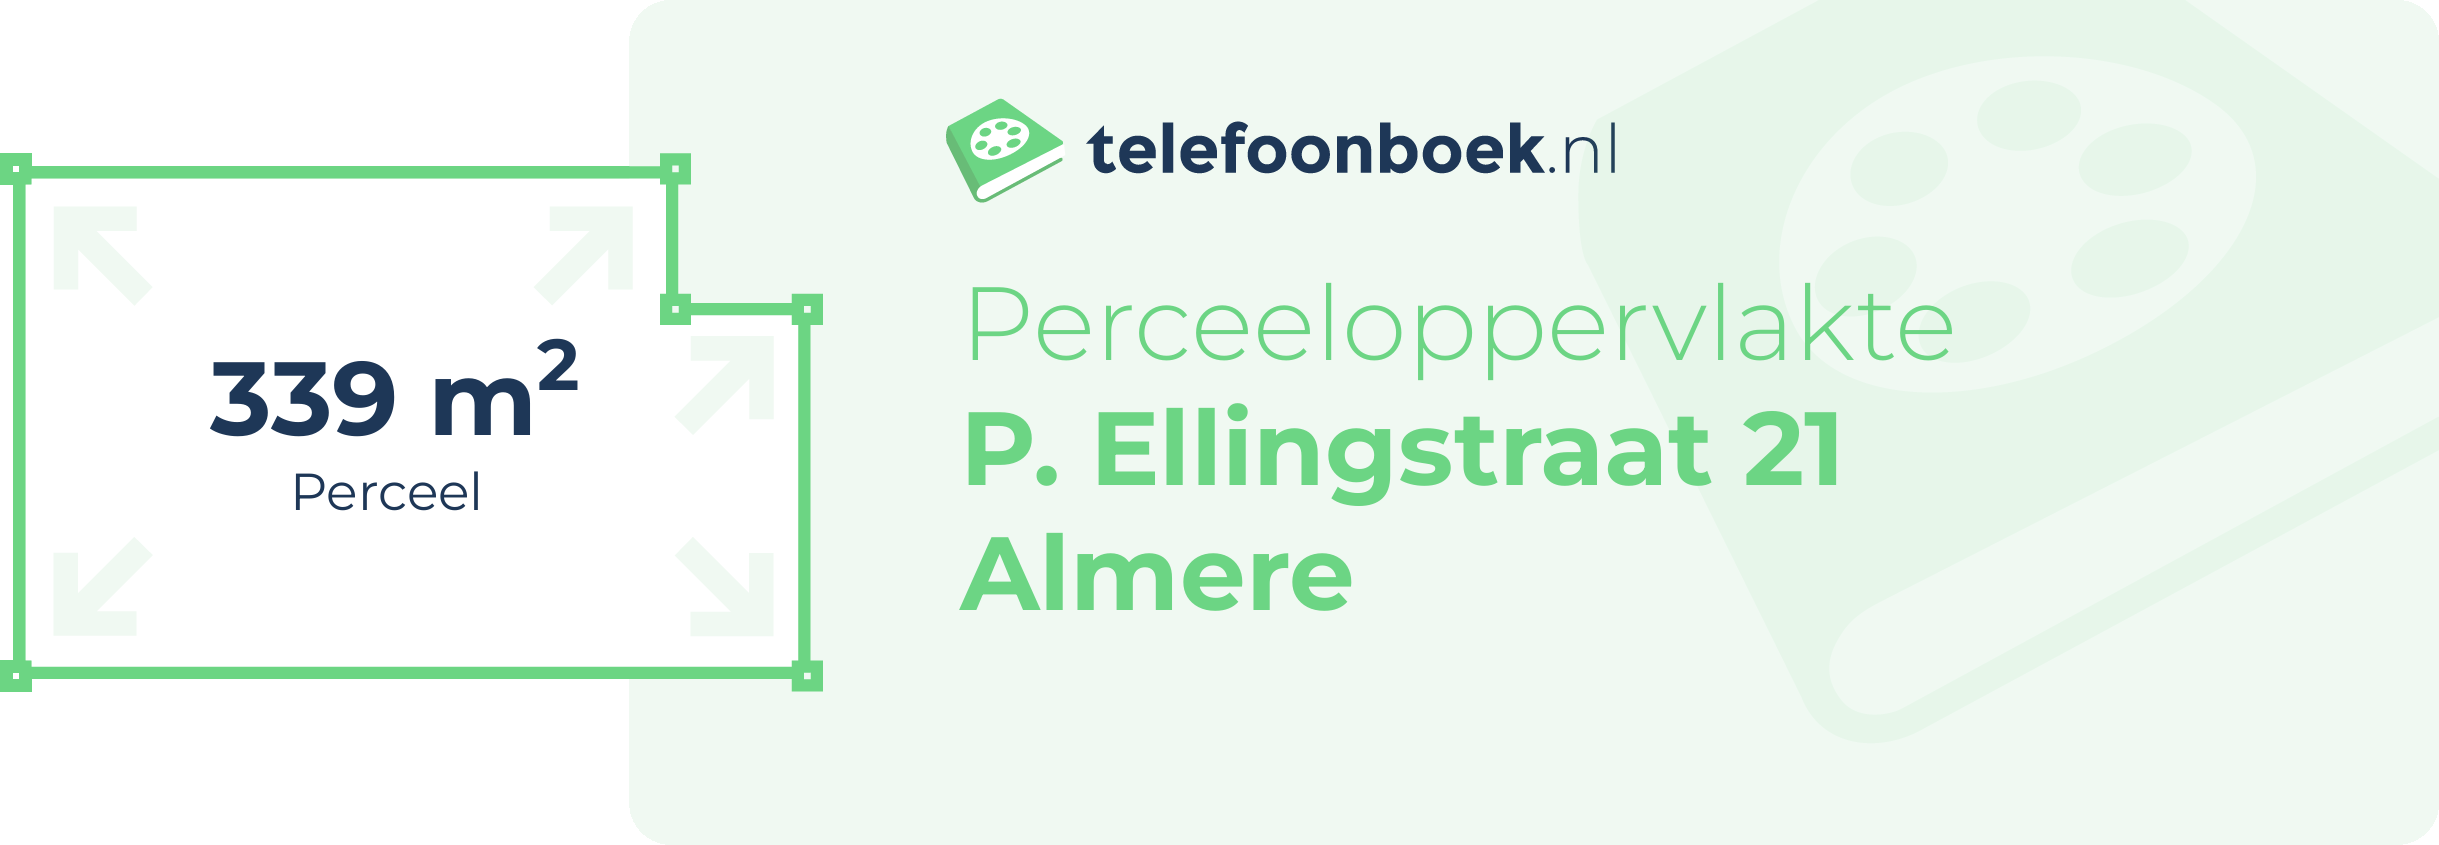 Perceeloppervlakte P. Ellingstraat 21 Almere